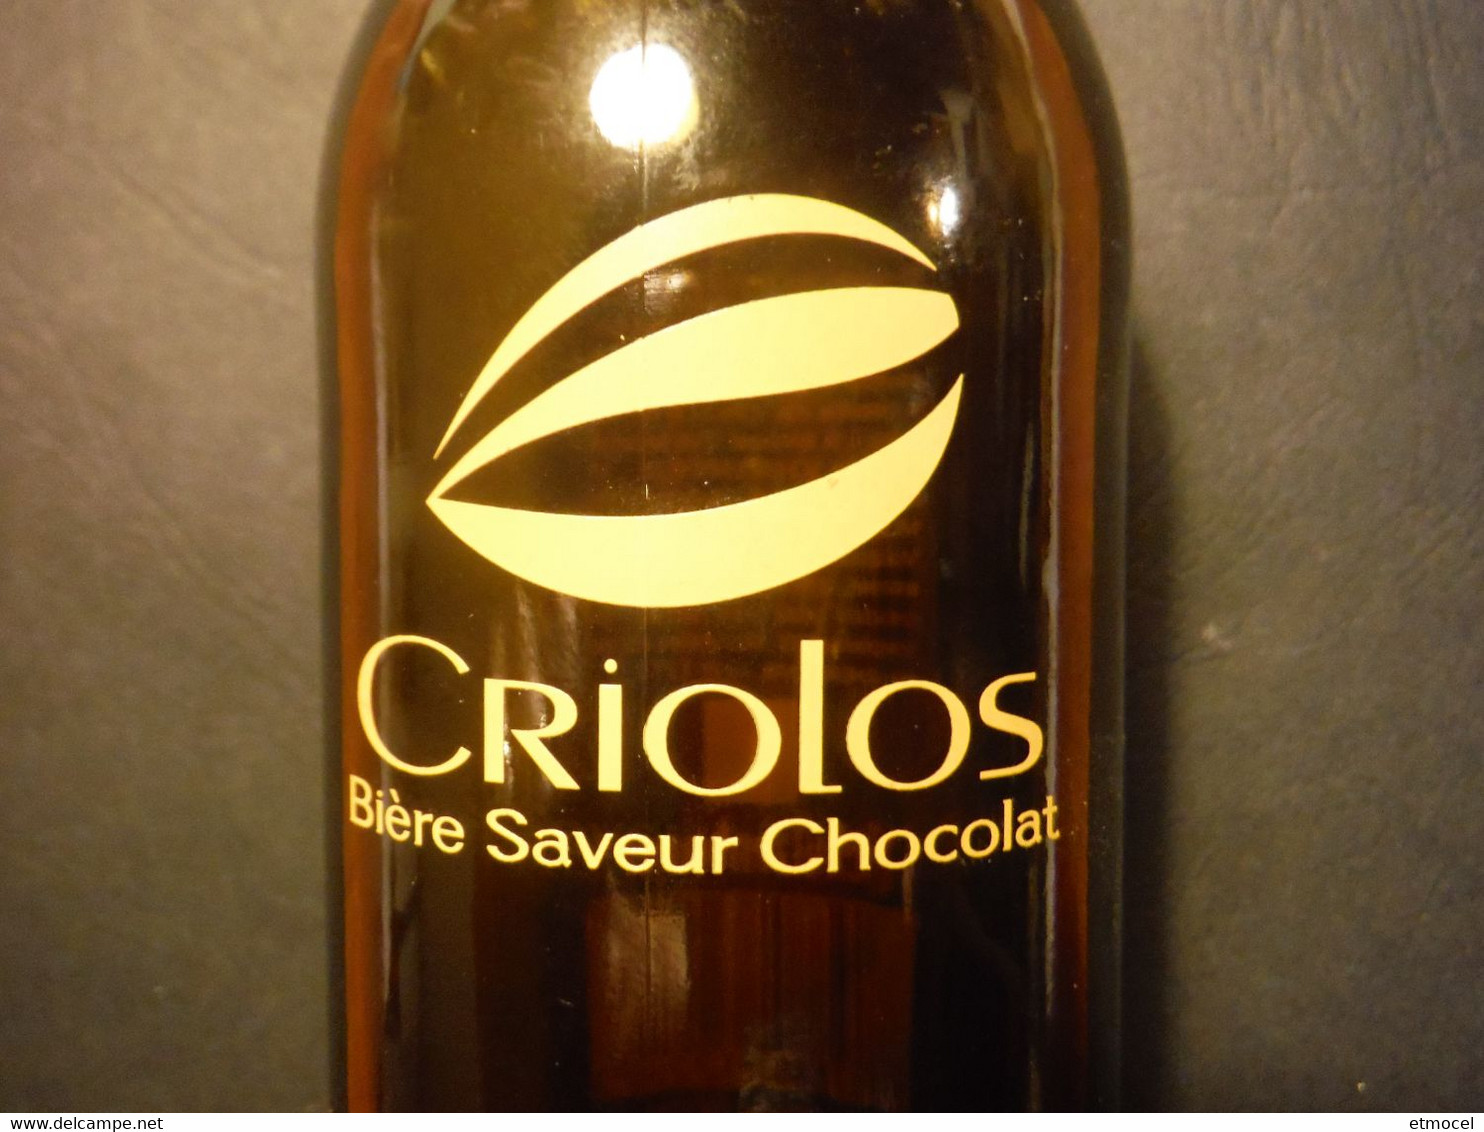 Bouteille Rare De Bière Criolos - Bière Saveur Chocolat - SCHUTZENBERGER - Thierry Mulhaupt - Bière